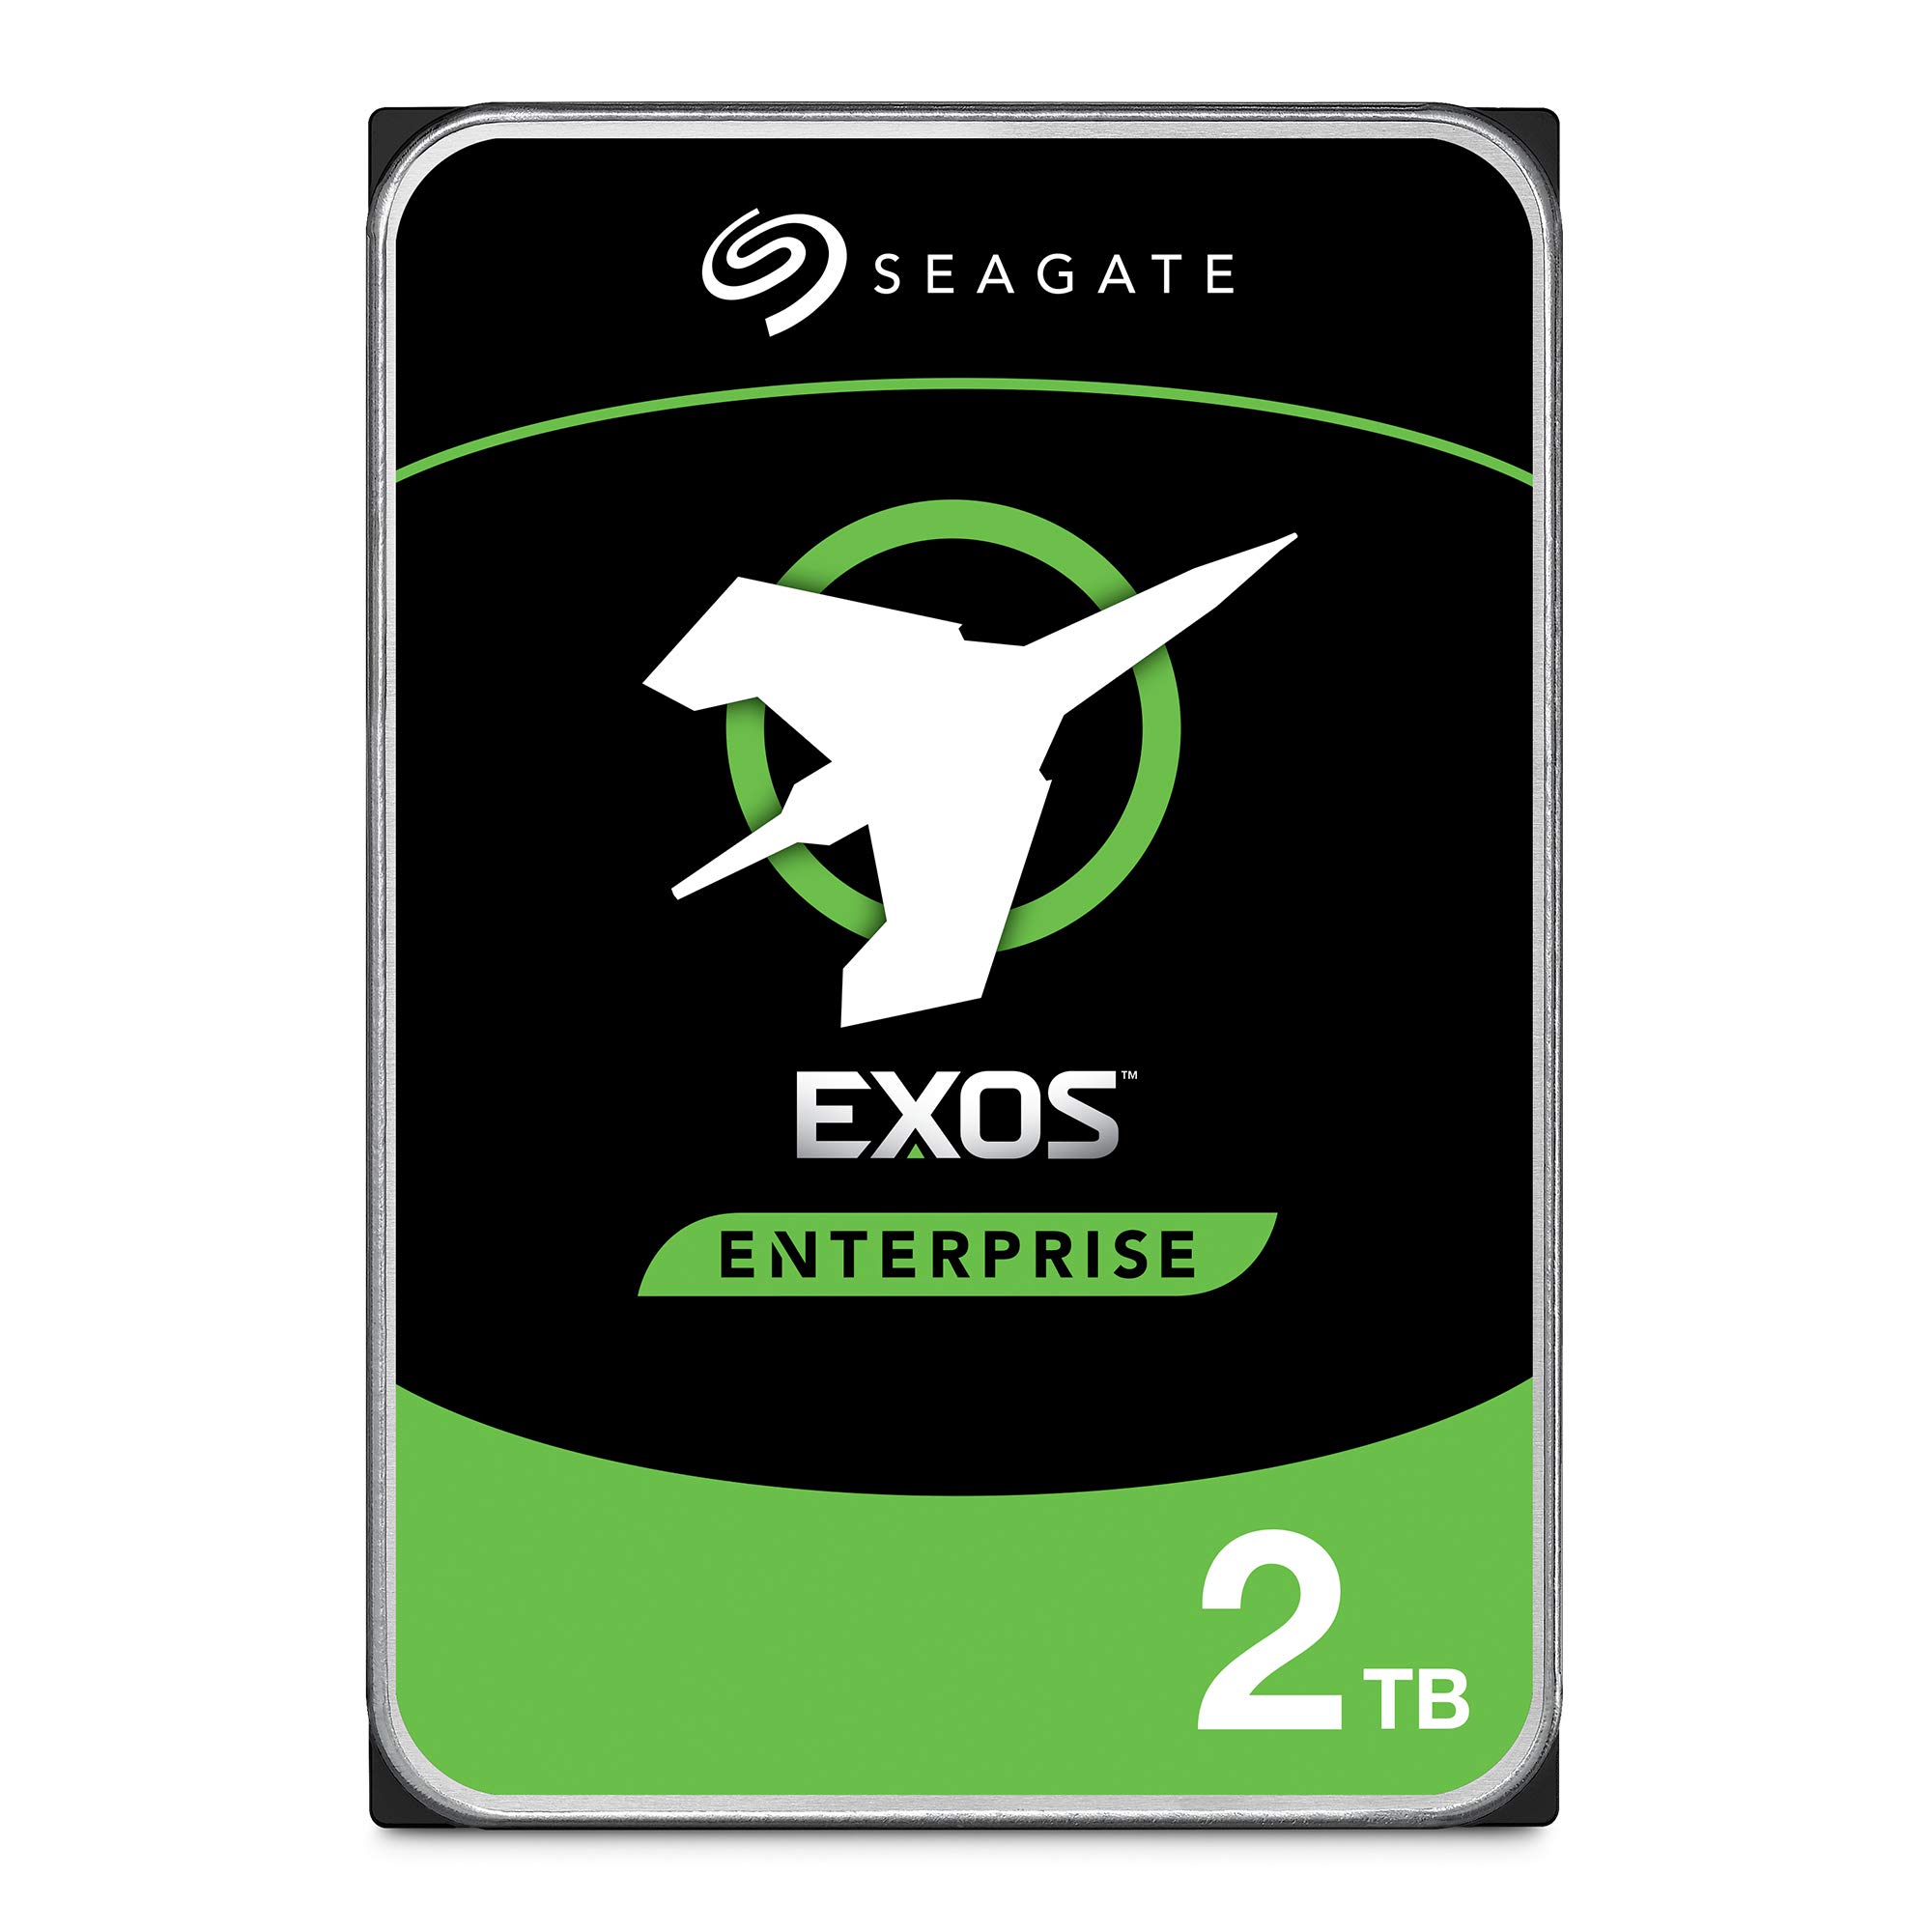 Seagate Exos Nearline Enterprise, Festplatte 2TB, E-Class, Modellnr.: ST2000NM0008